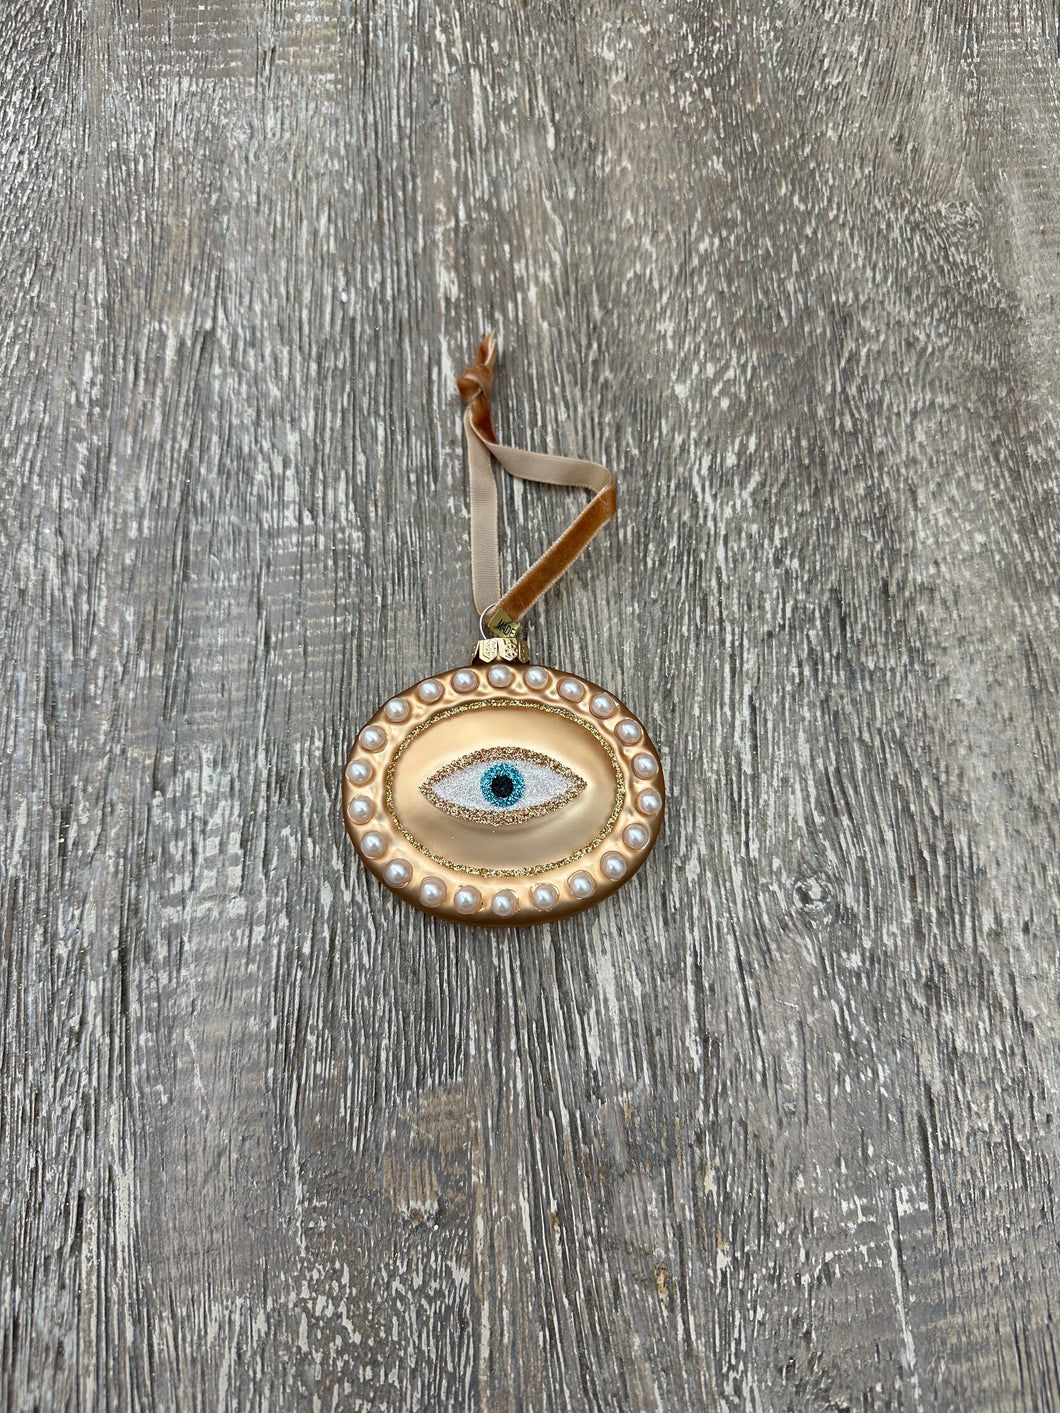 Lover's Eye Ornament